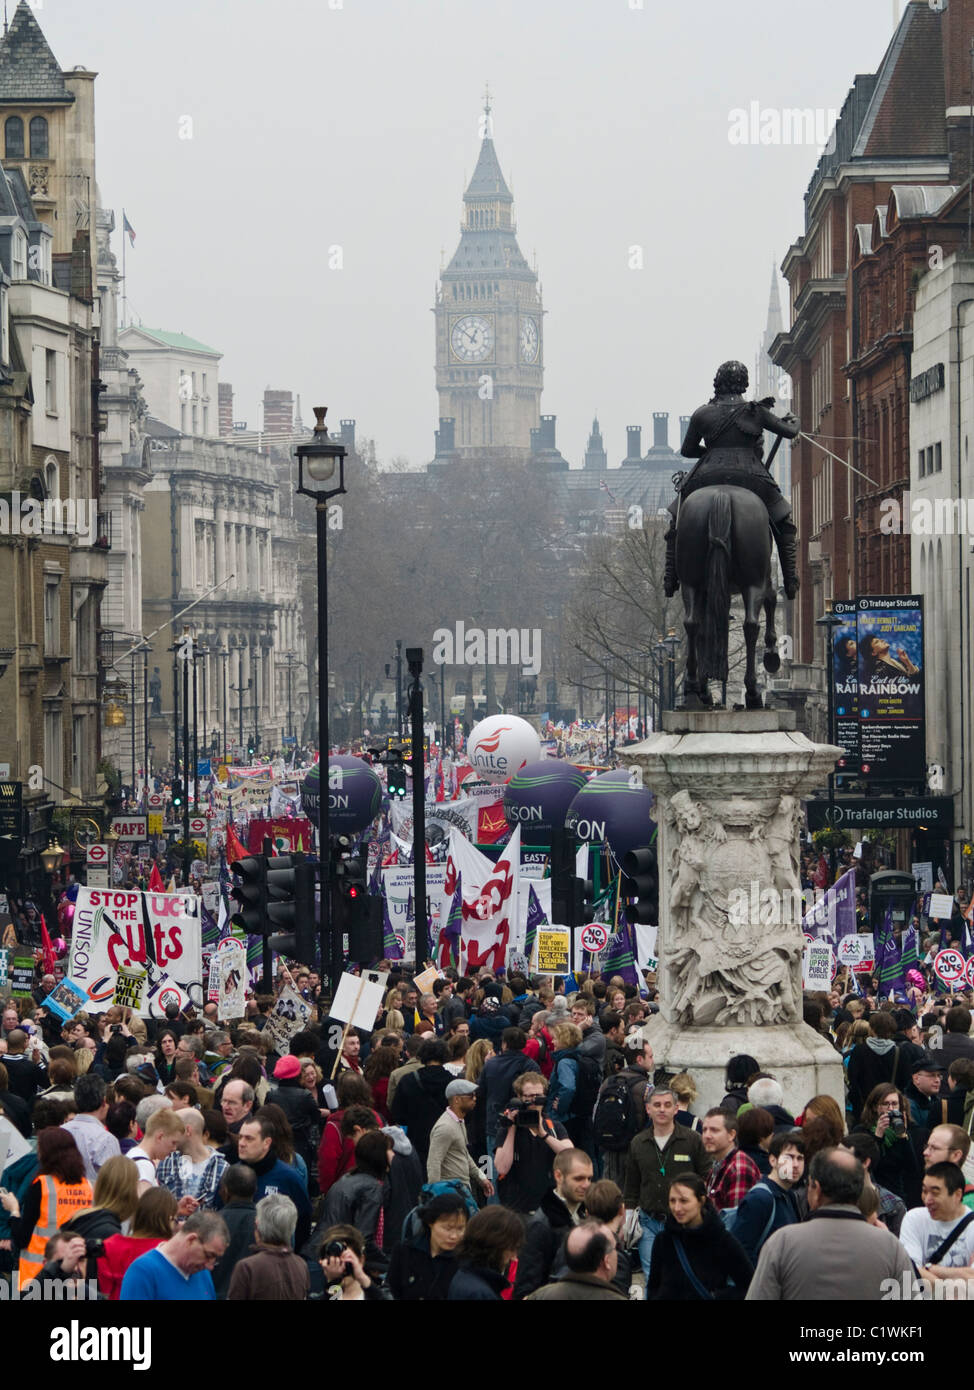 Los manifestantes marchar Whitehall como tomar parte en una manifestación de protesta contra los recortes gubernamentales en Londres. Foto de stock